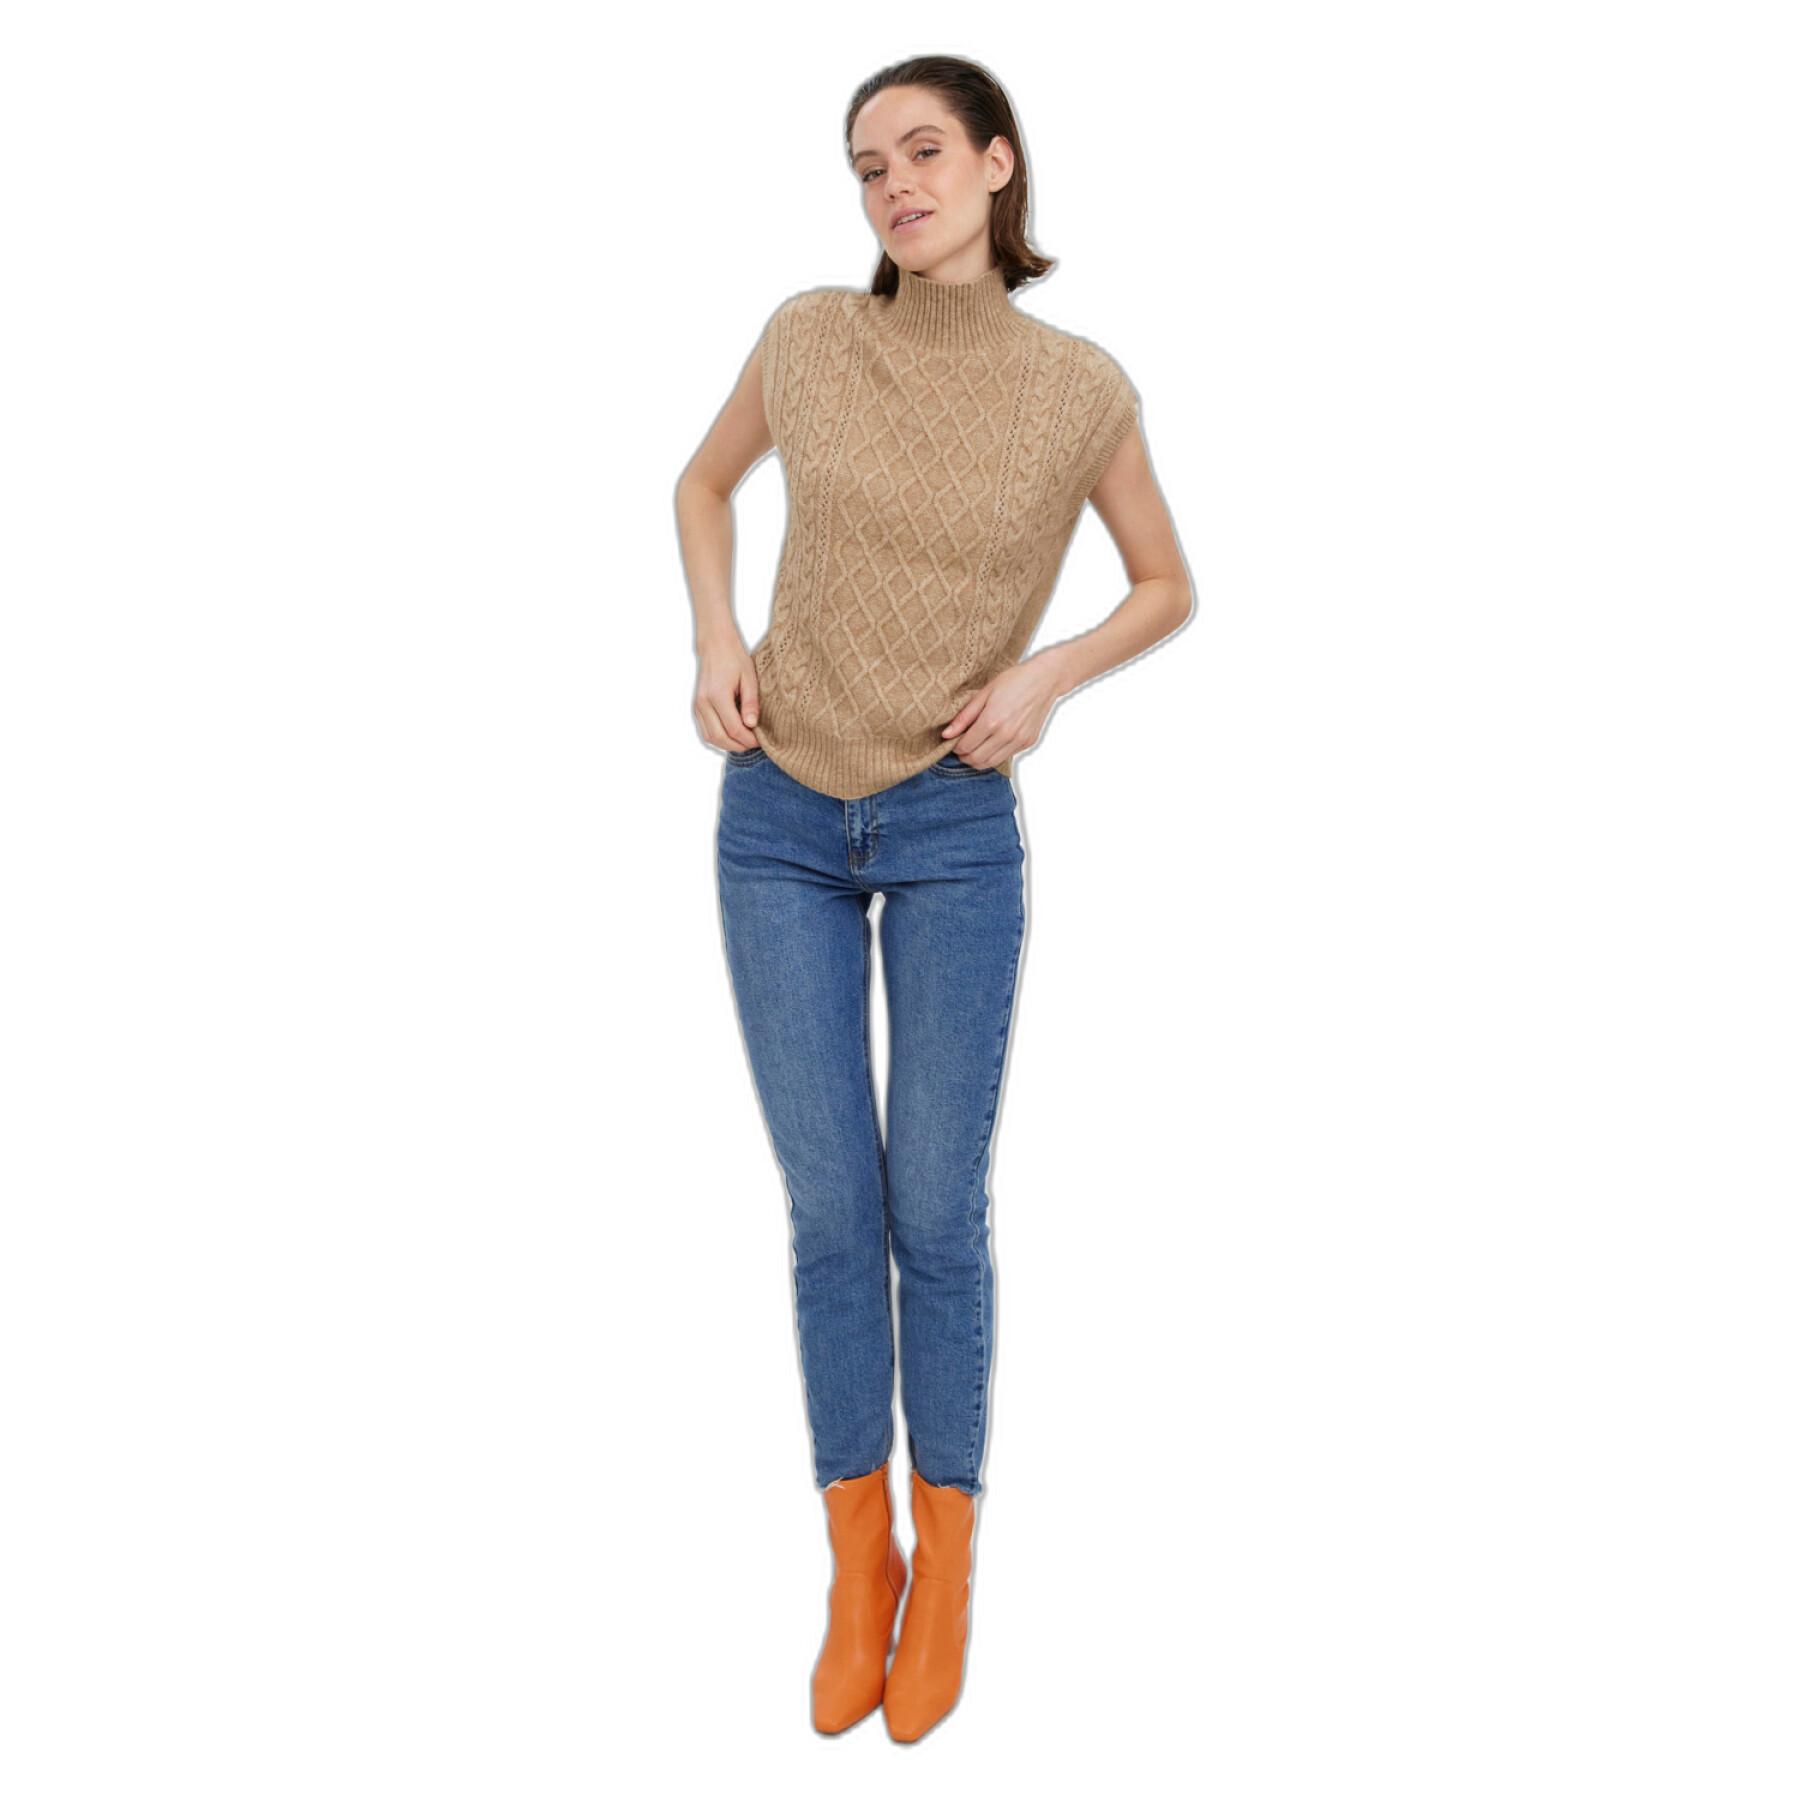 Women's sleeveless sweater Vero Moda Vigga